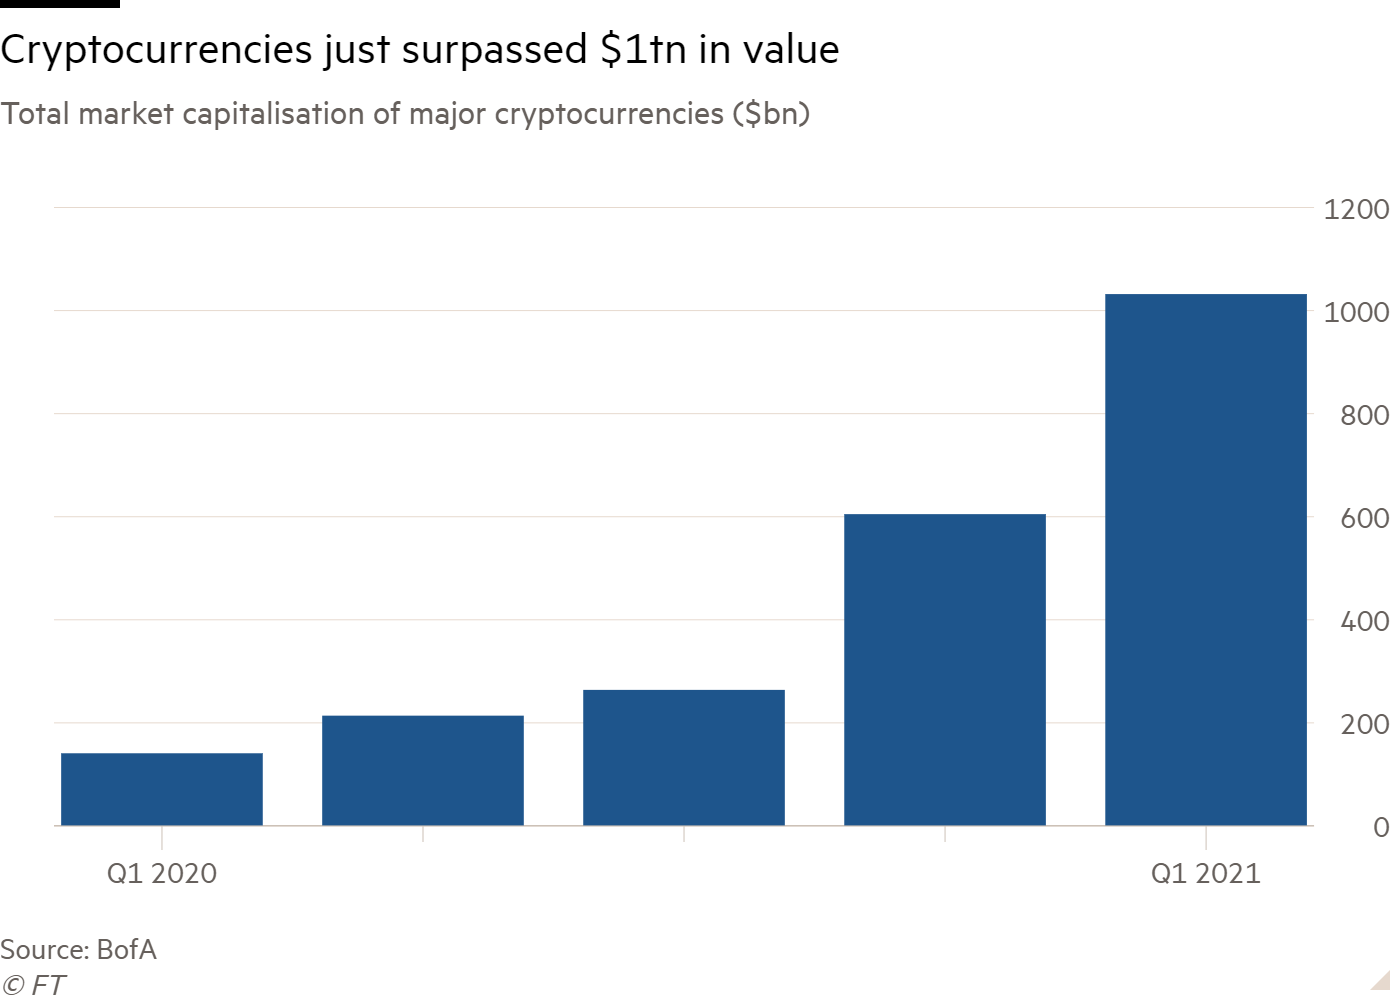 Cryptocurrencies have surpassed the 1 trillion market cap value